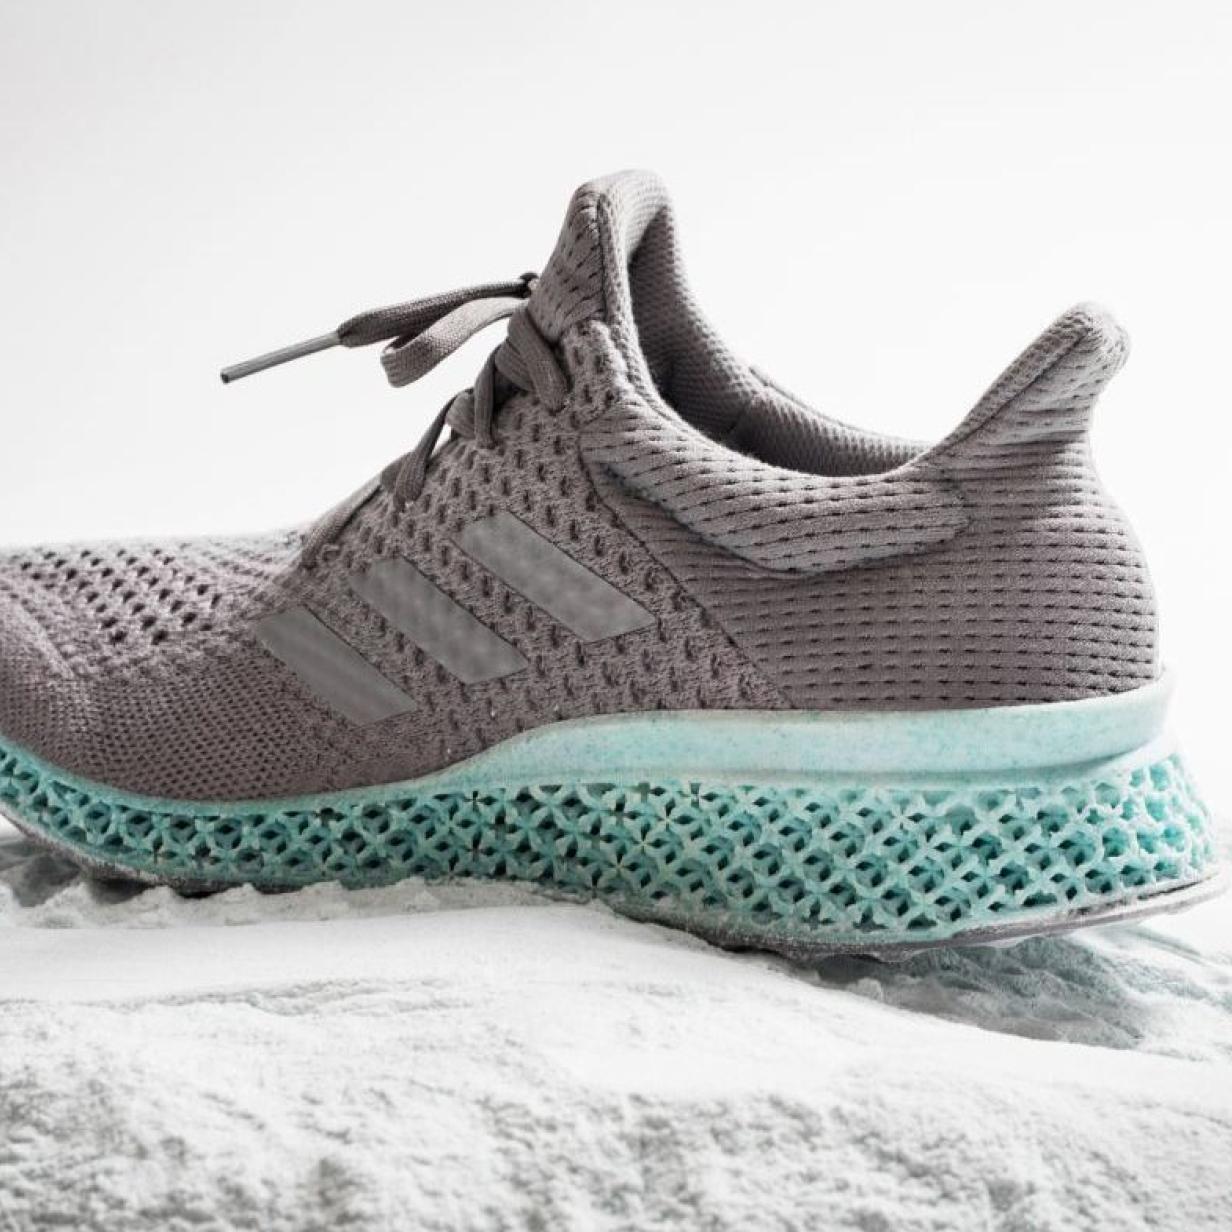 produziert individuelle Wunsch-Schuhe mit 3D-Drucker